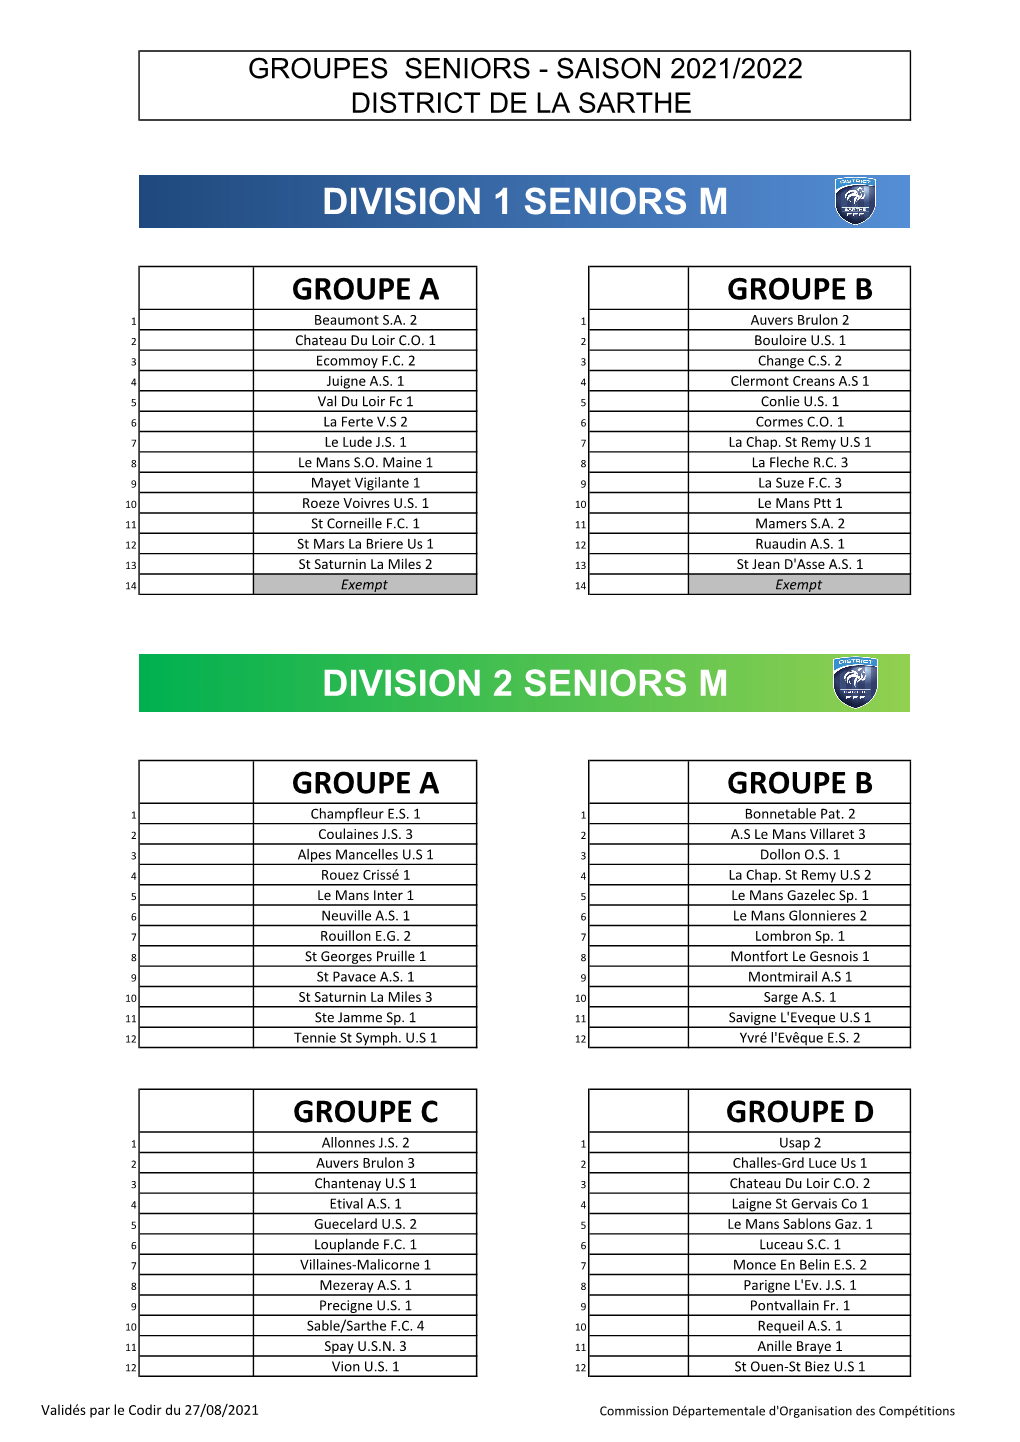 Division 1 Seniors M Division 2 Seniors M